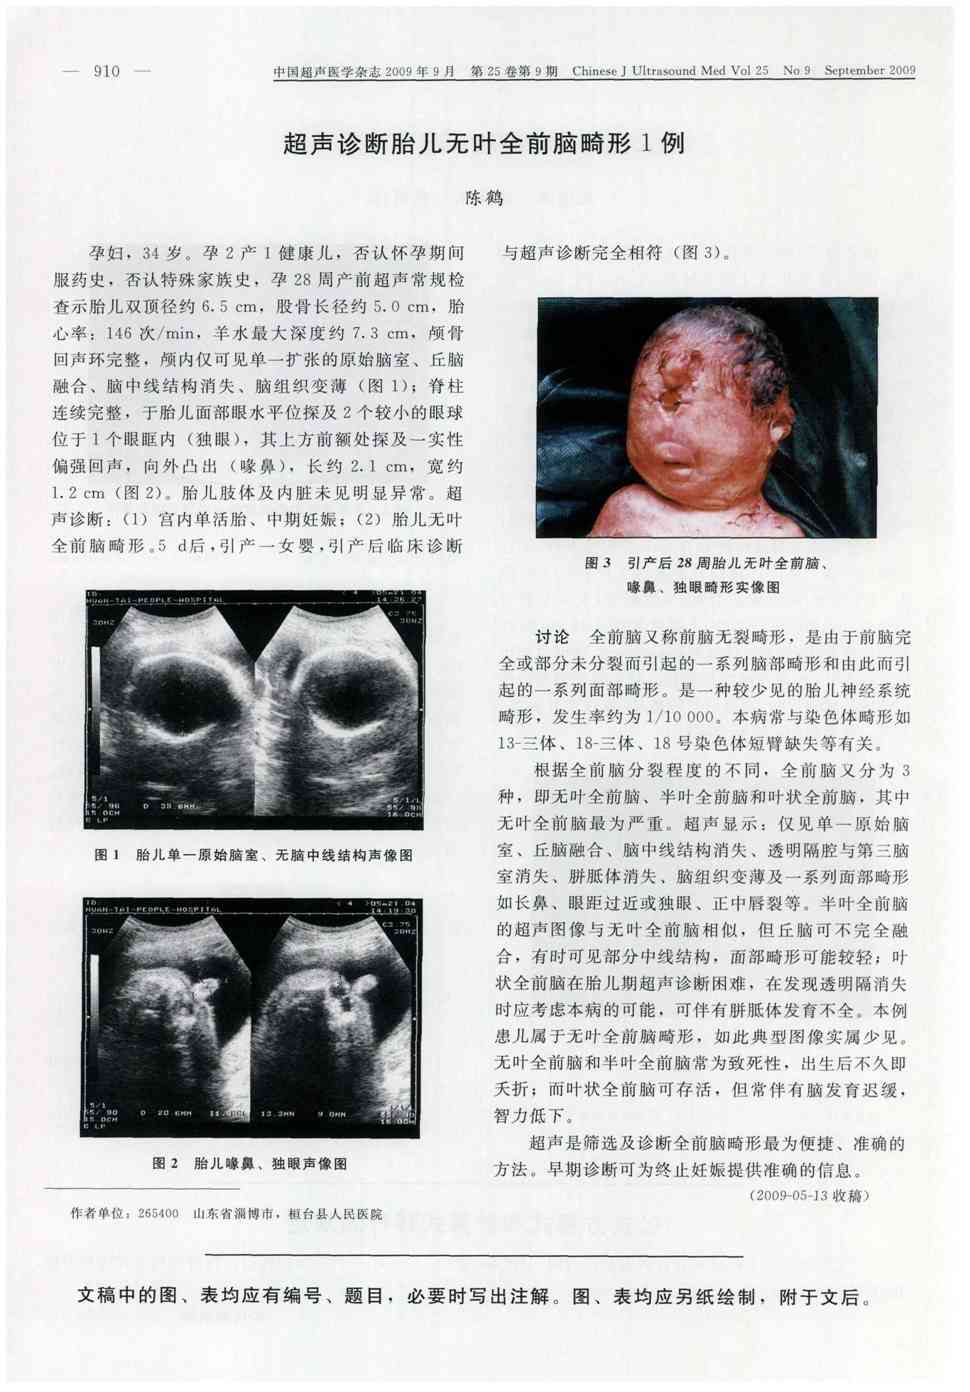 期刊超声诊断胎儿无叶全前脑畸形1例   孕妇,34岁.